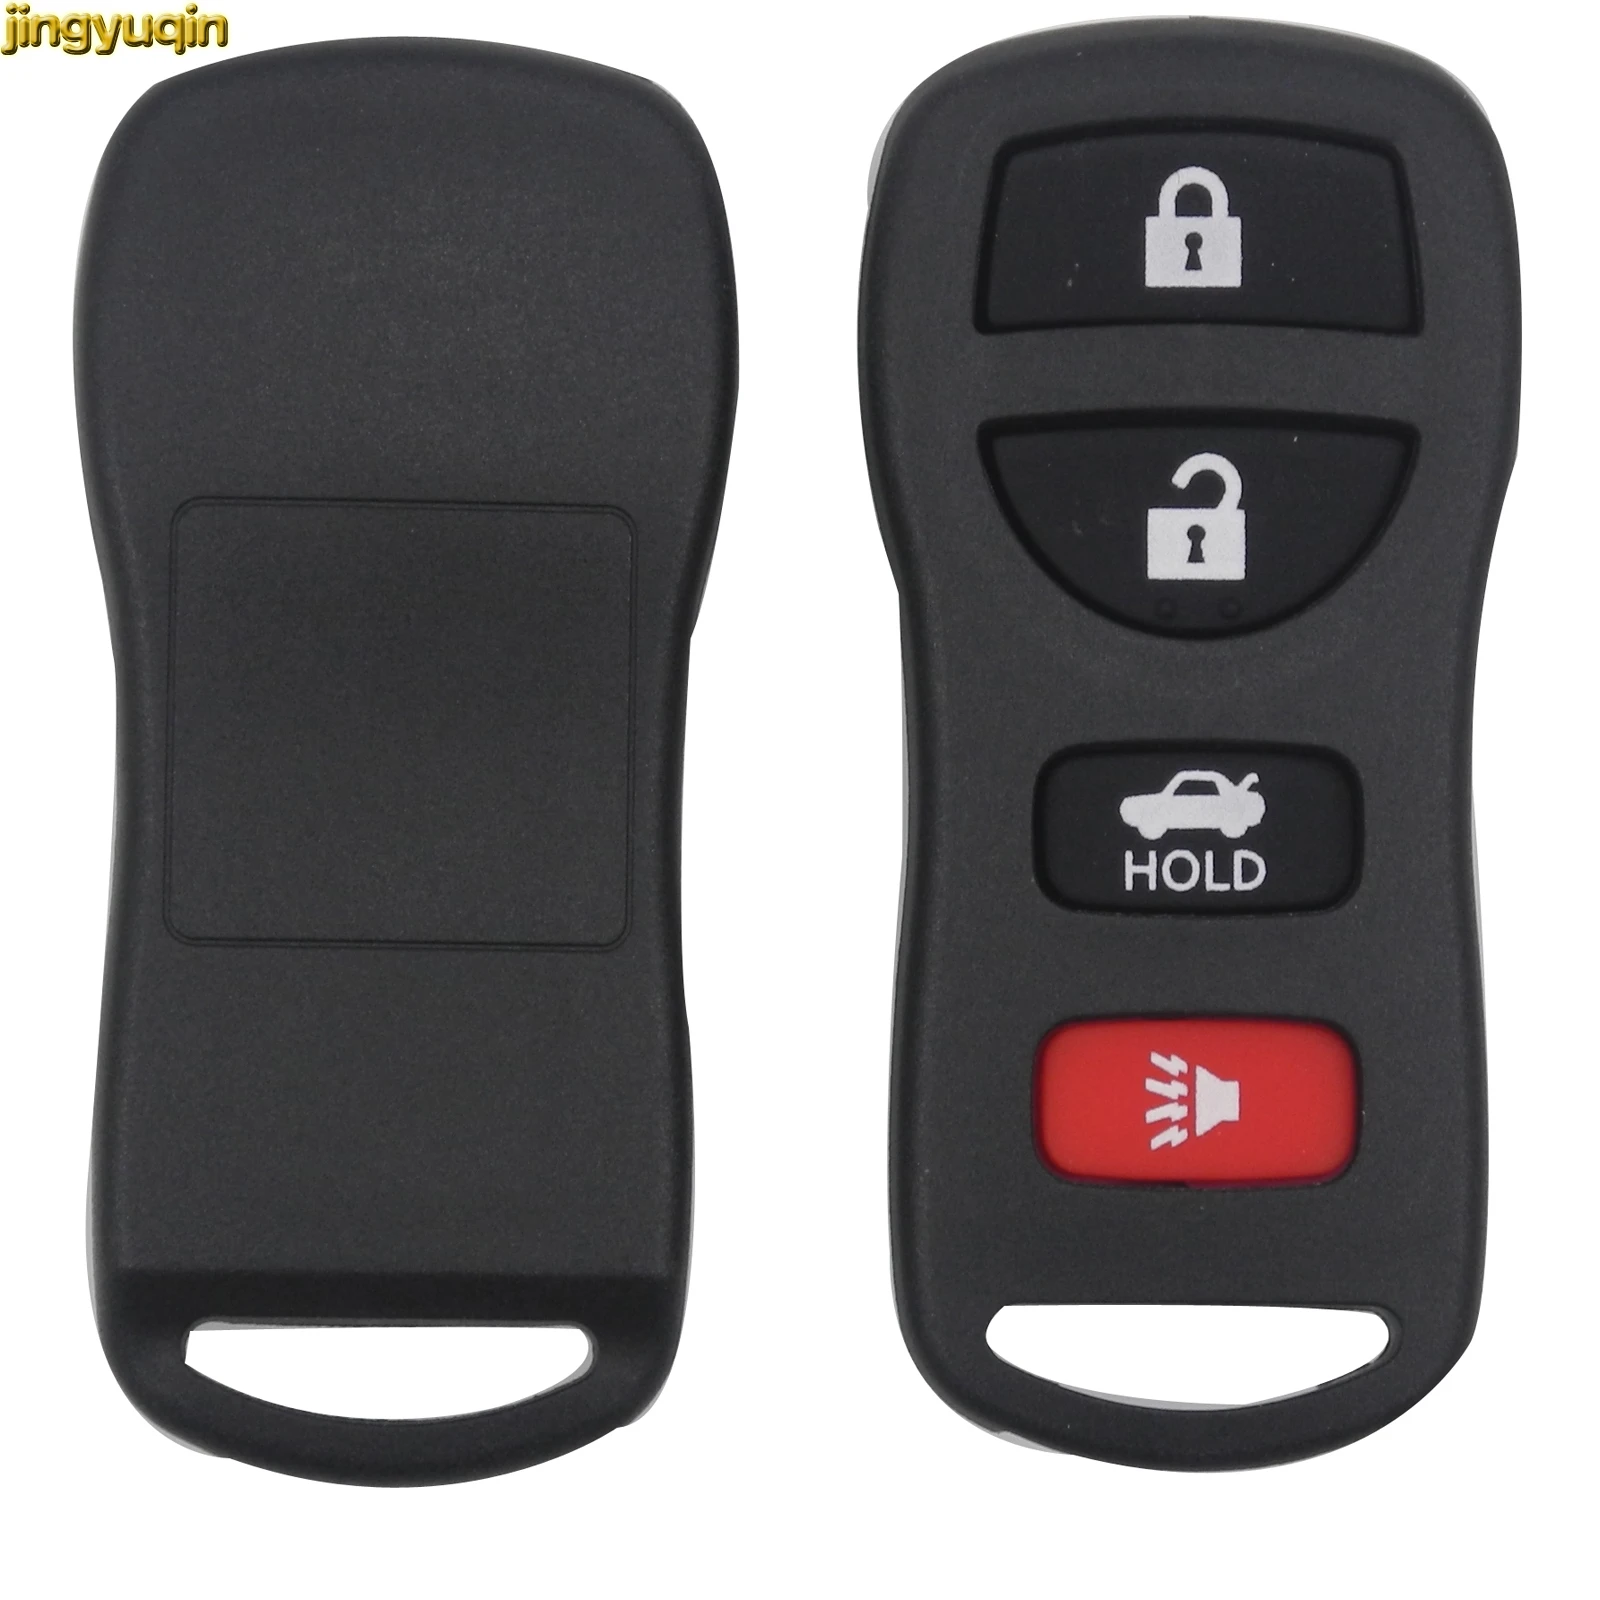 Remote Car Key Shell for Nissan Sentra Armada 350Z Altima Maxima Infiniti FX35 EX35 FX45 QX56 G35 M45 I35 Key Fob Case Cover